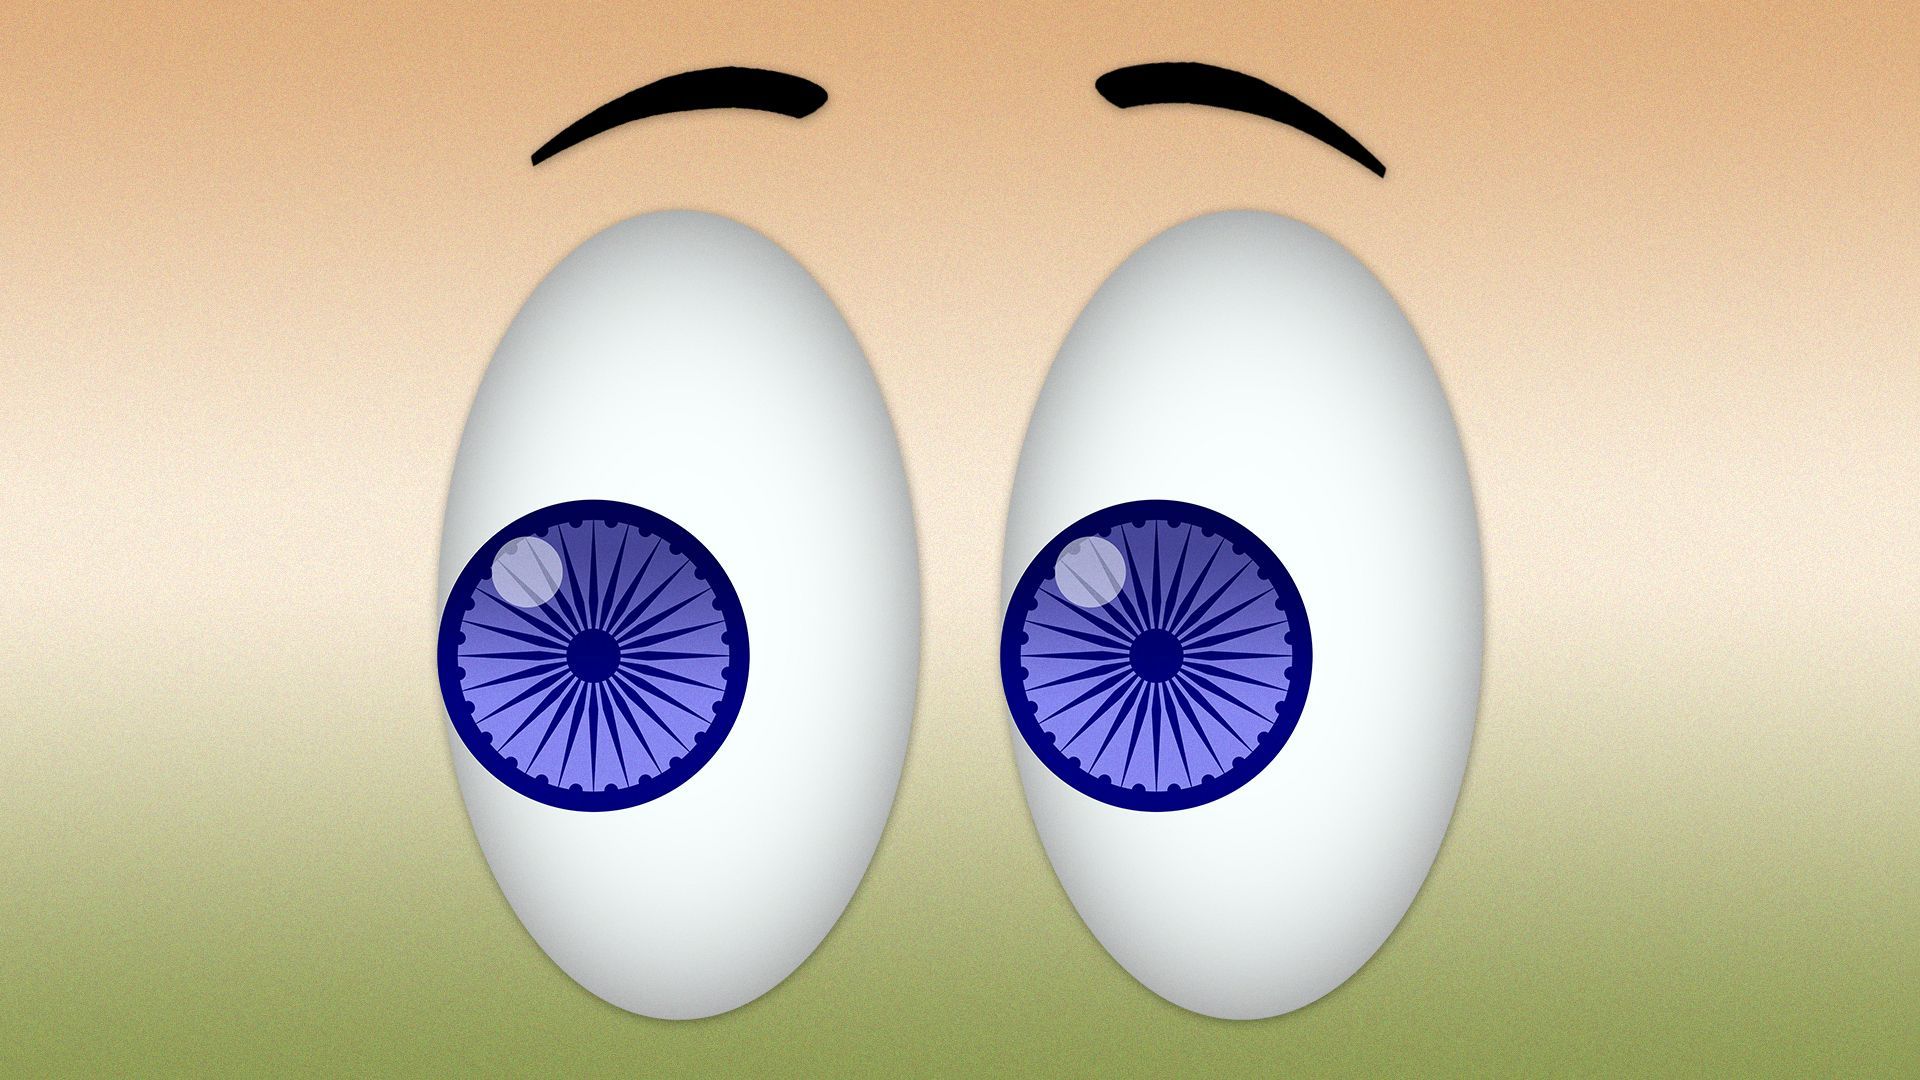 Illustration of eyes emoji with Ashoka Chakra wheels as the pupils.